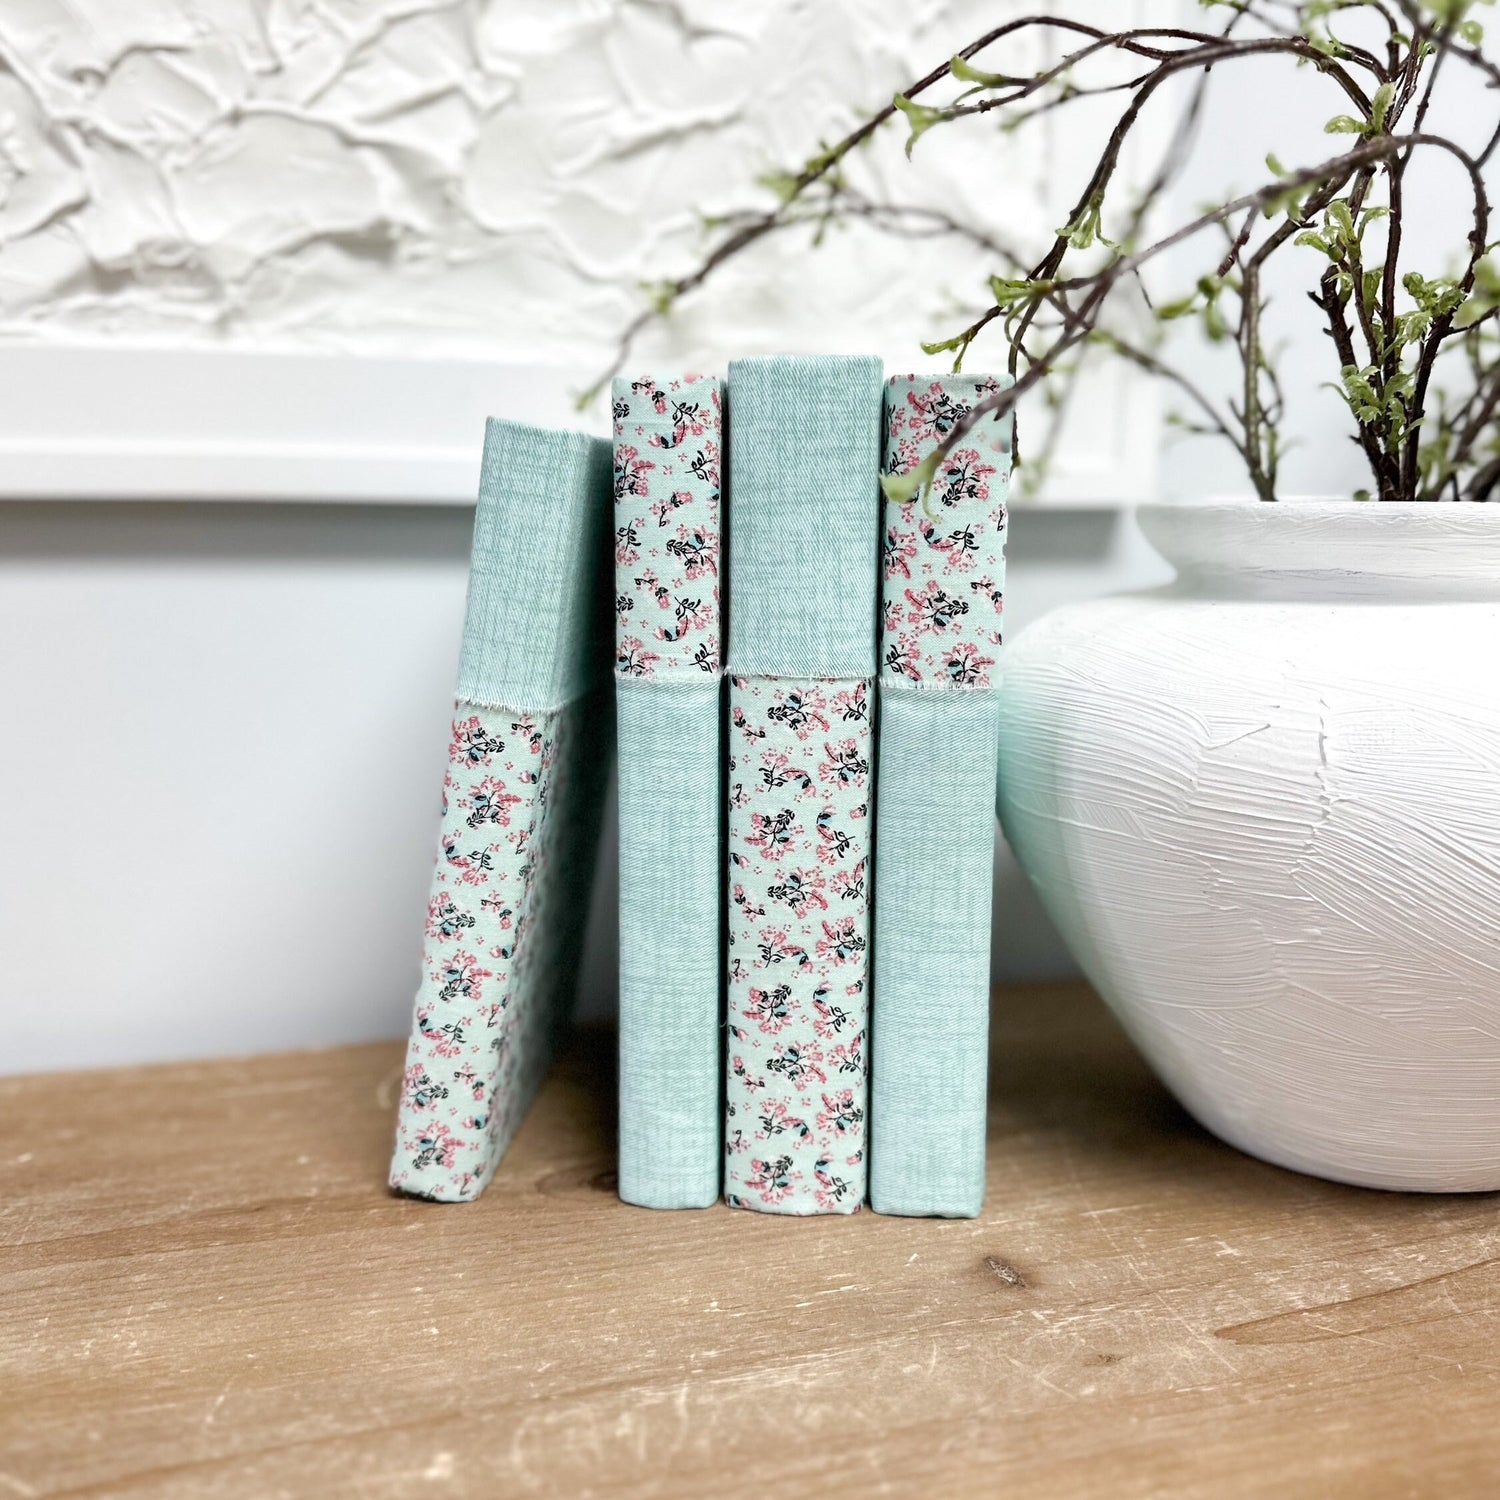 Linen Covered Books, Floral Home Decor, Shelf Decor, Home Design